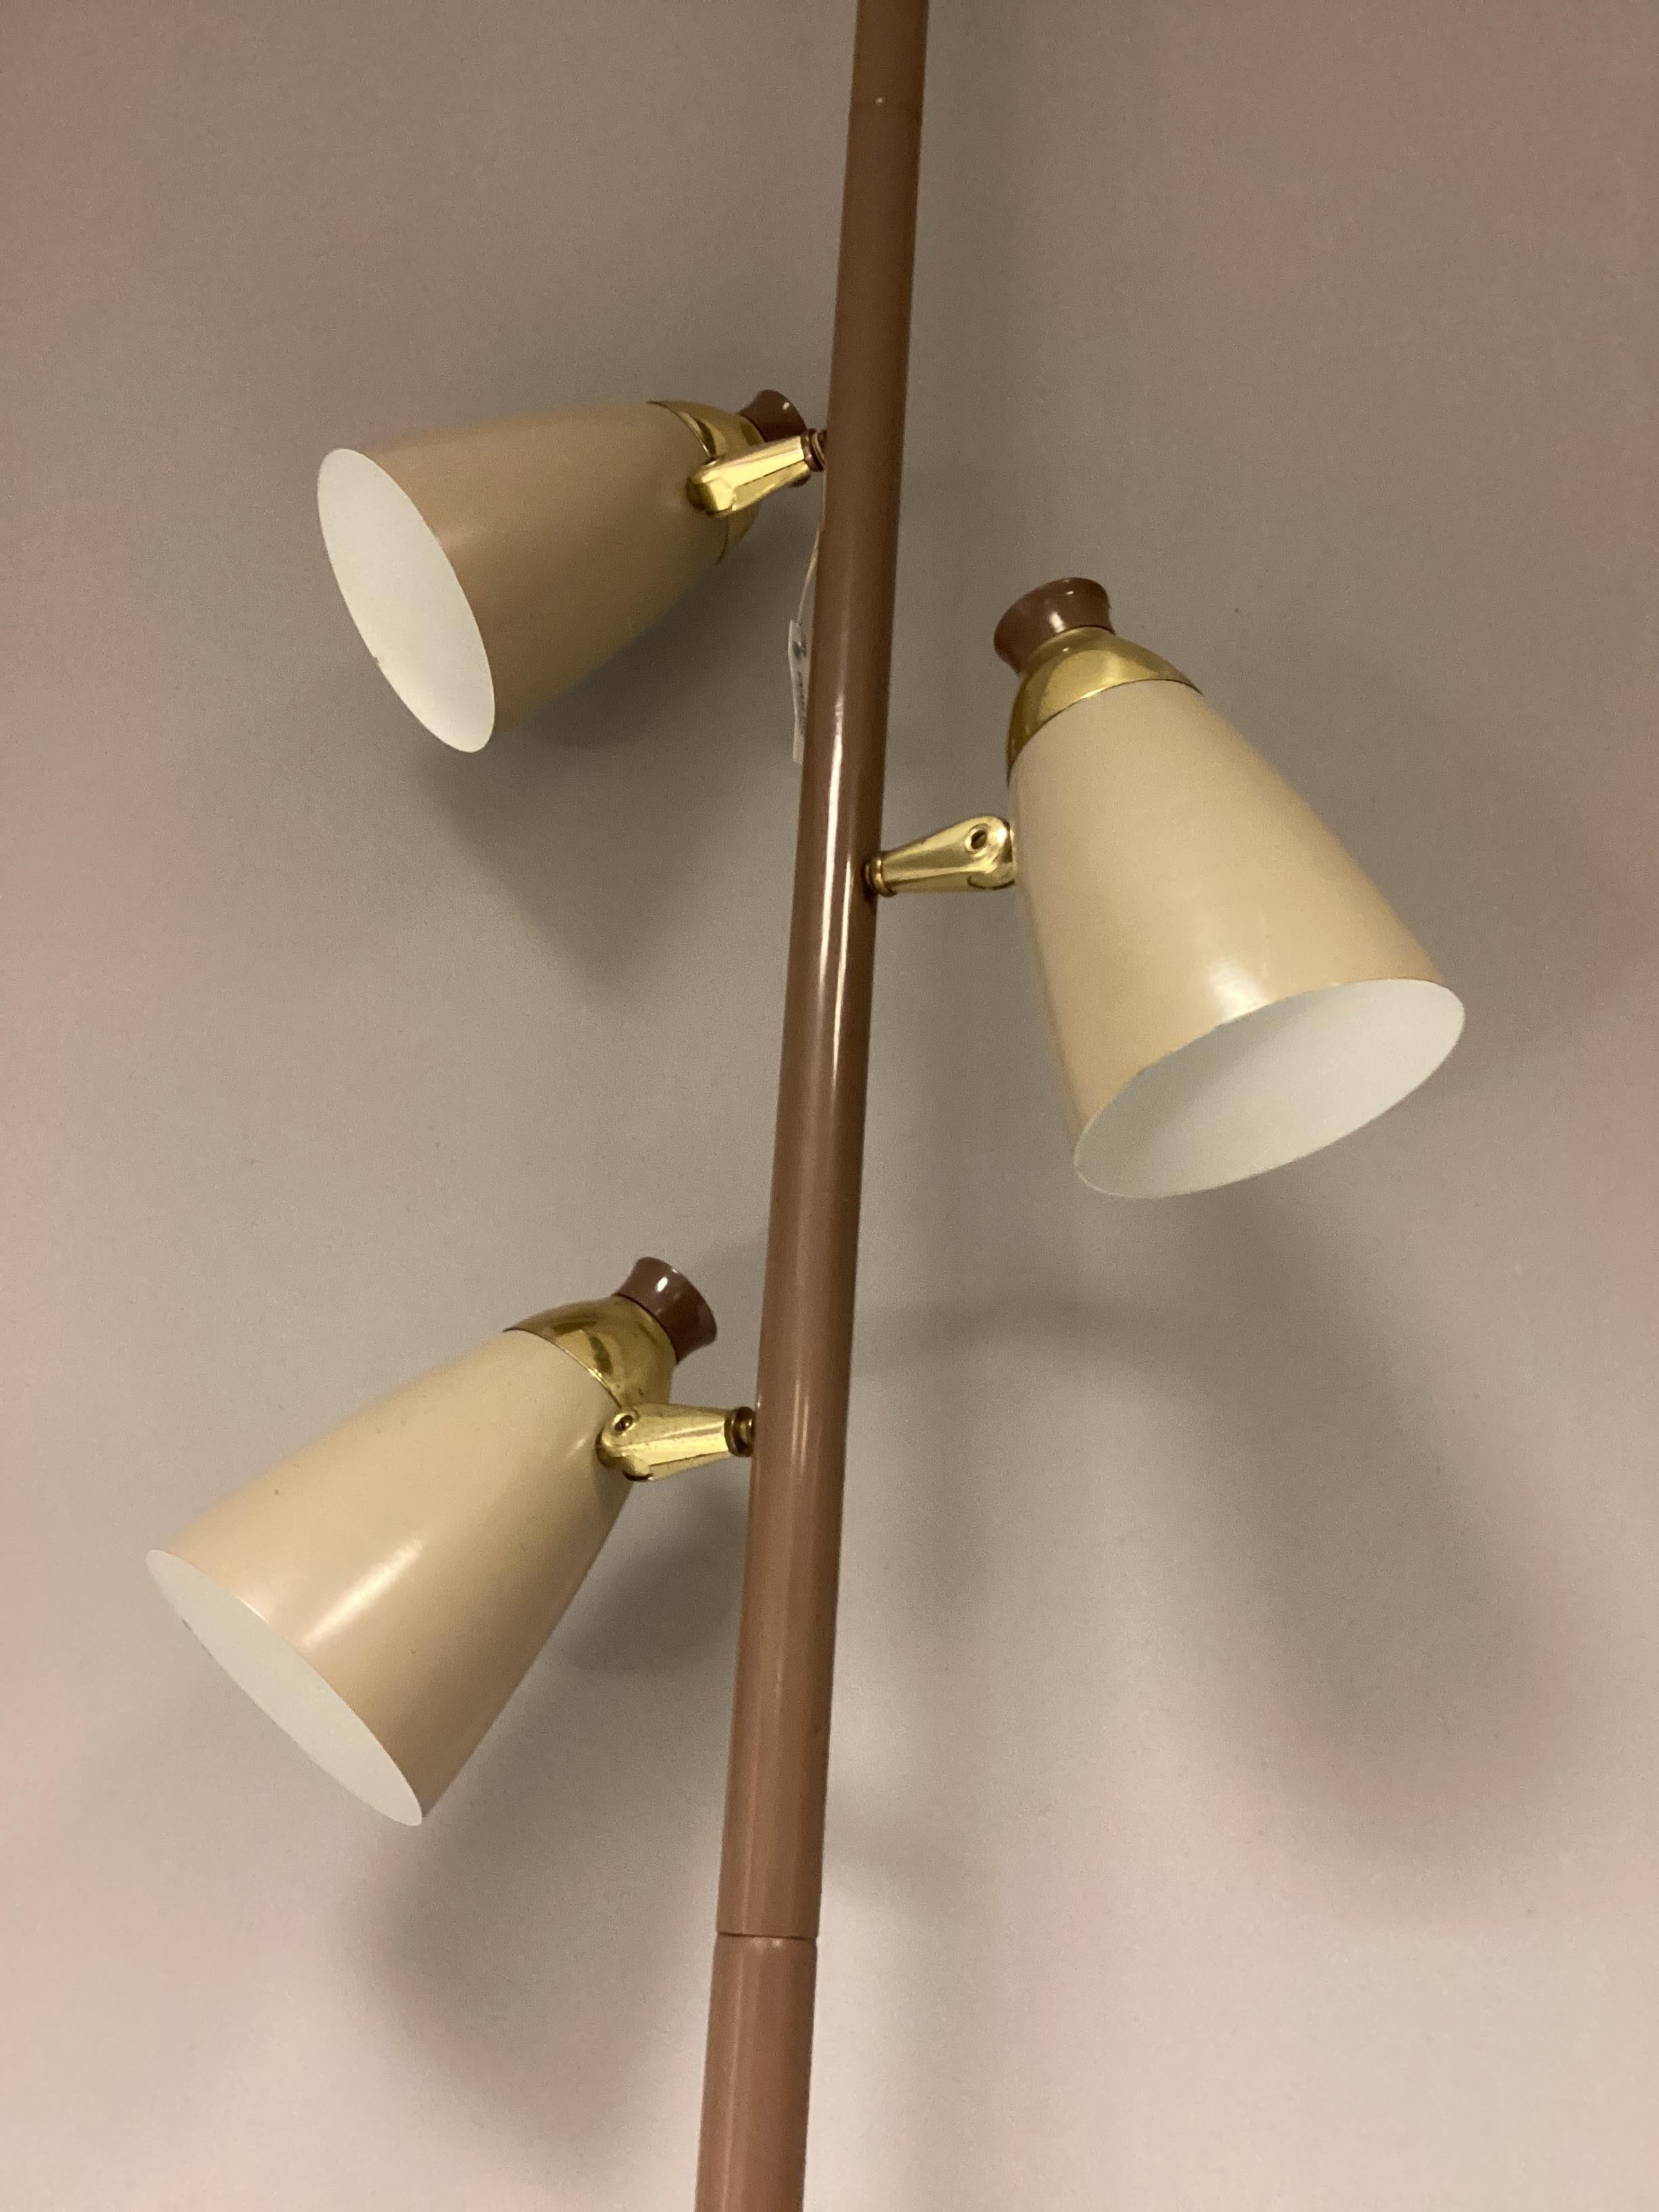 Wunderschöne schlichte Midcentury-Lampe des Herstellers TED Stiffel USA. Diese spezielle Lampe mit drei Lampenschirmen ist zwischen zwei Decken zu klemmen. Viele Positionen der Lampe in einem Raum sind möglich: in der Nähe einer Wand, in einer Ecke